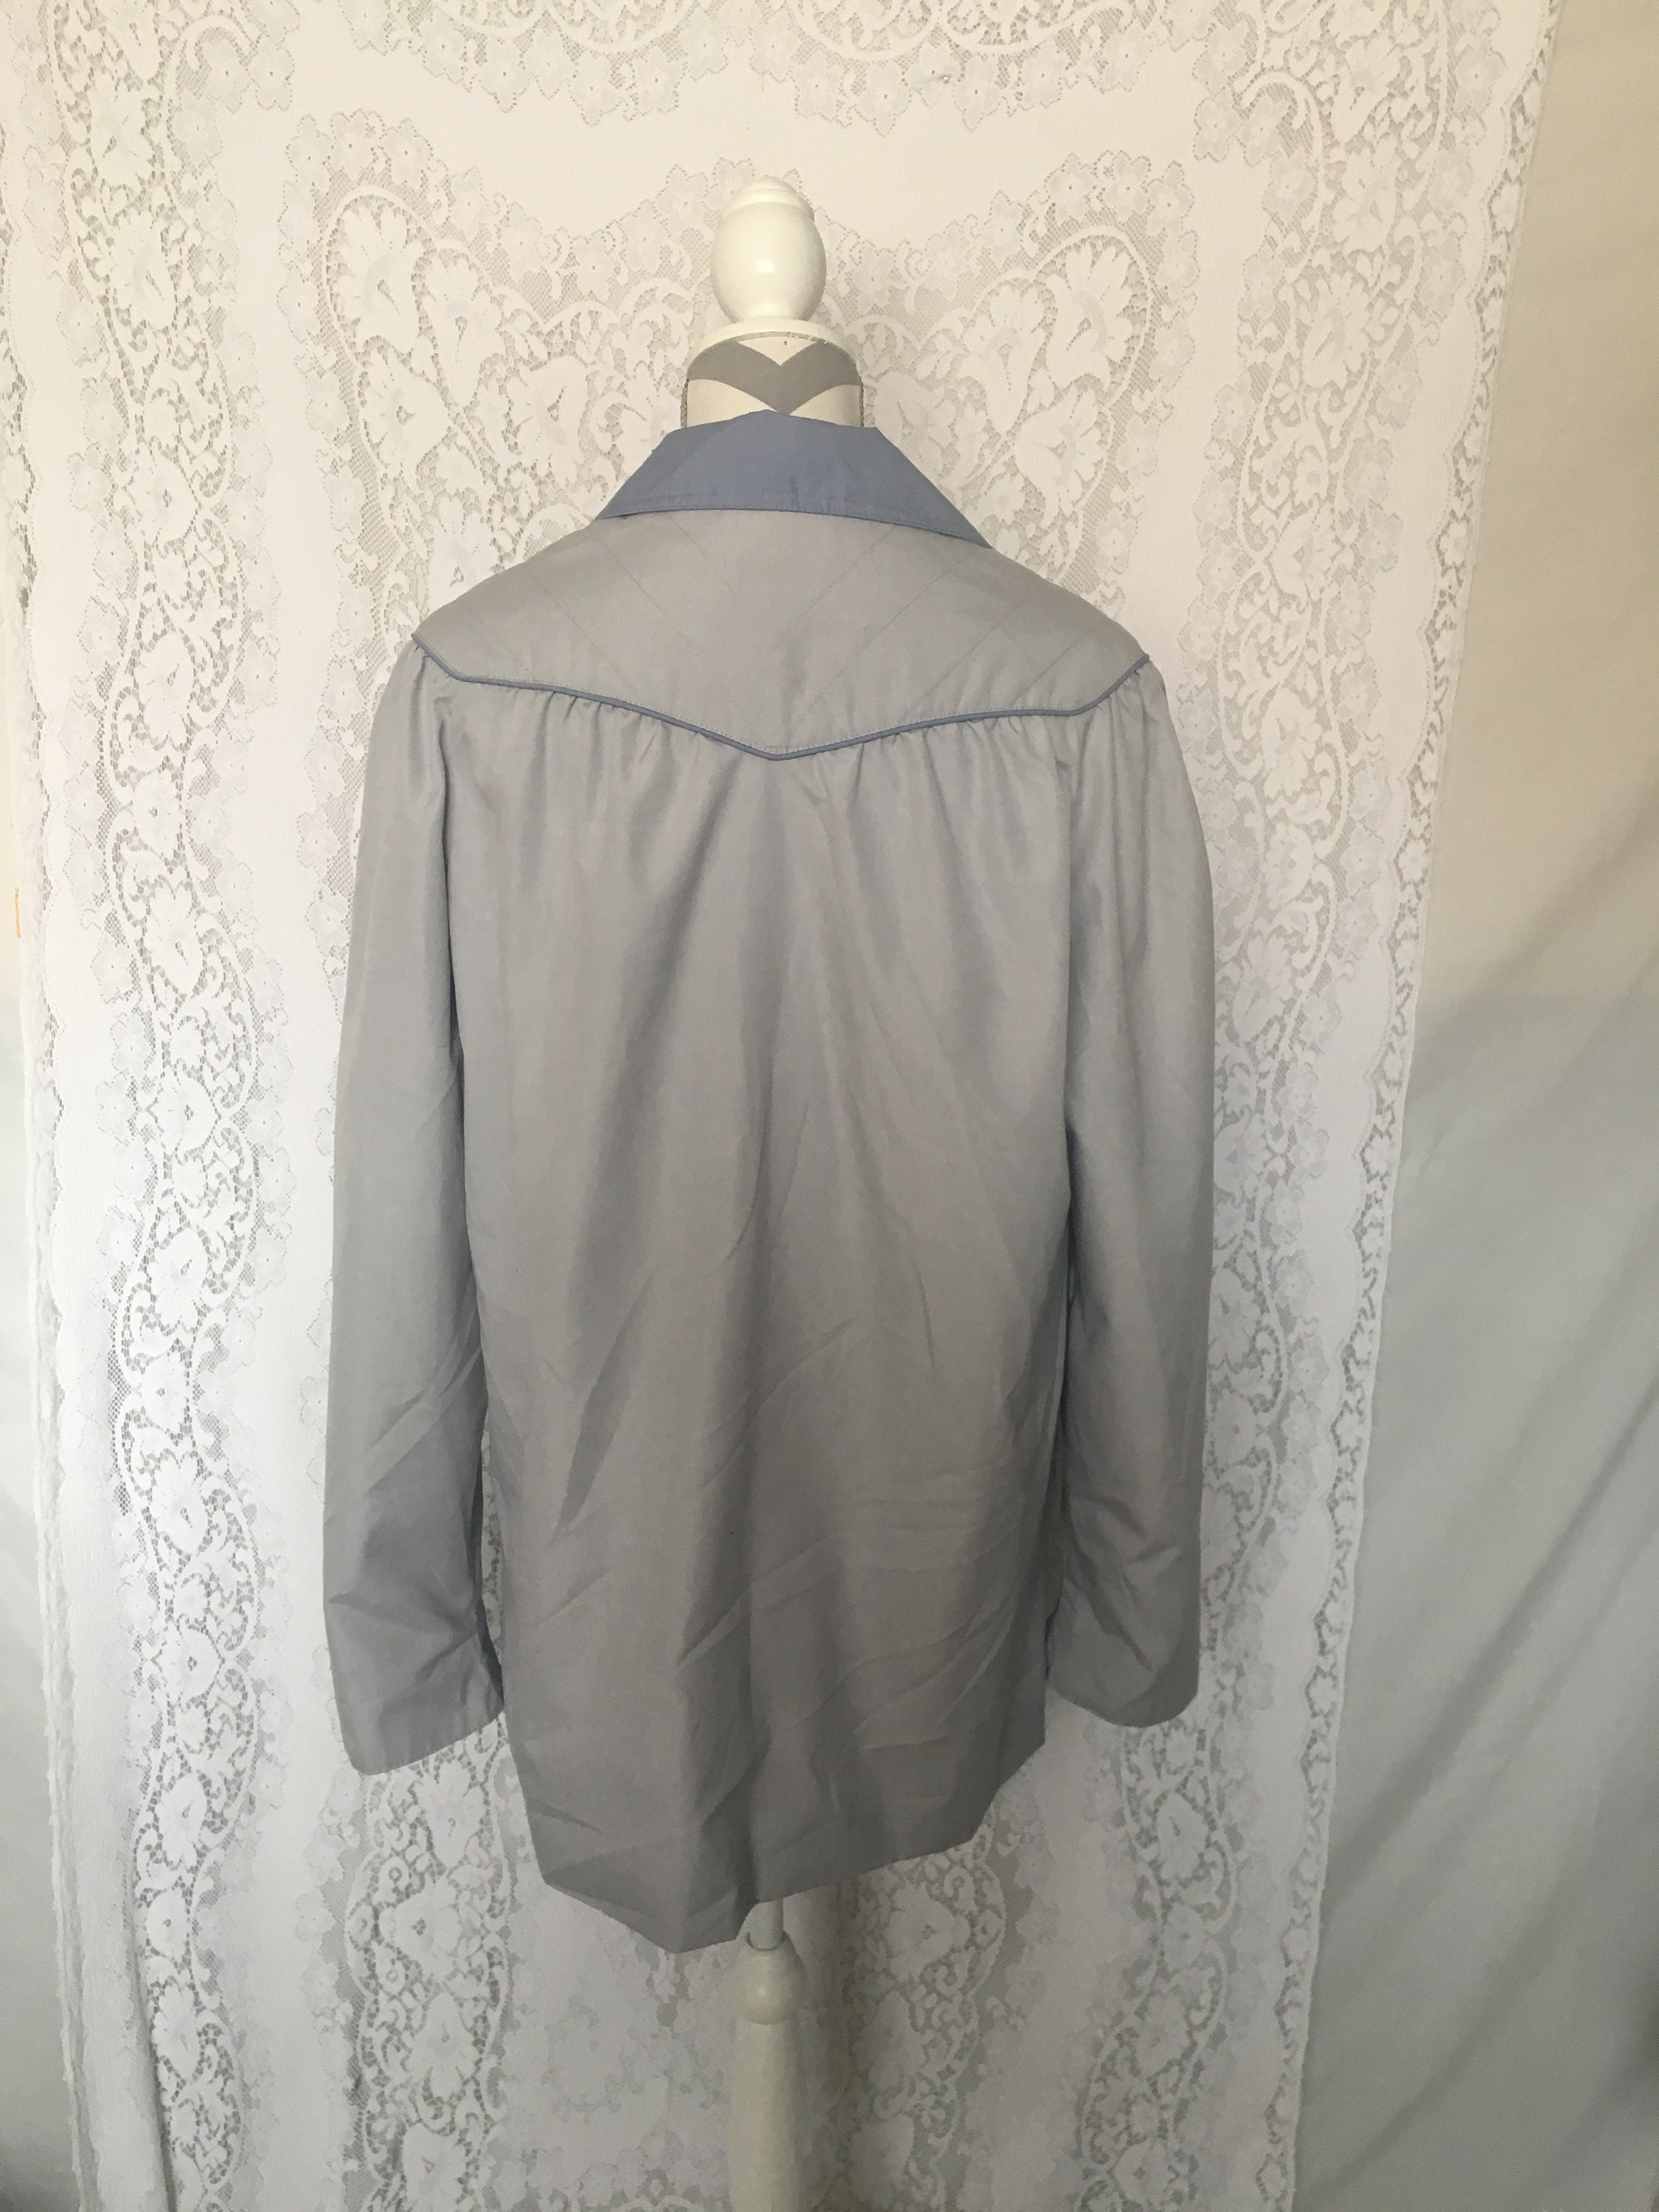 Vintage granny coat/old lady jacket/light coat/housewife | Etsy